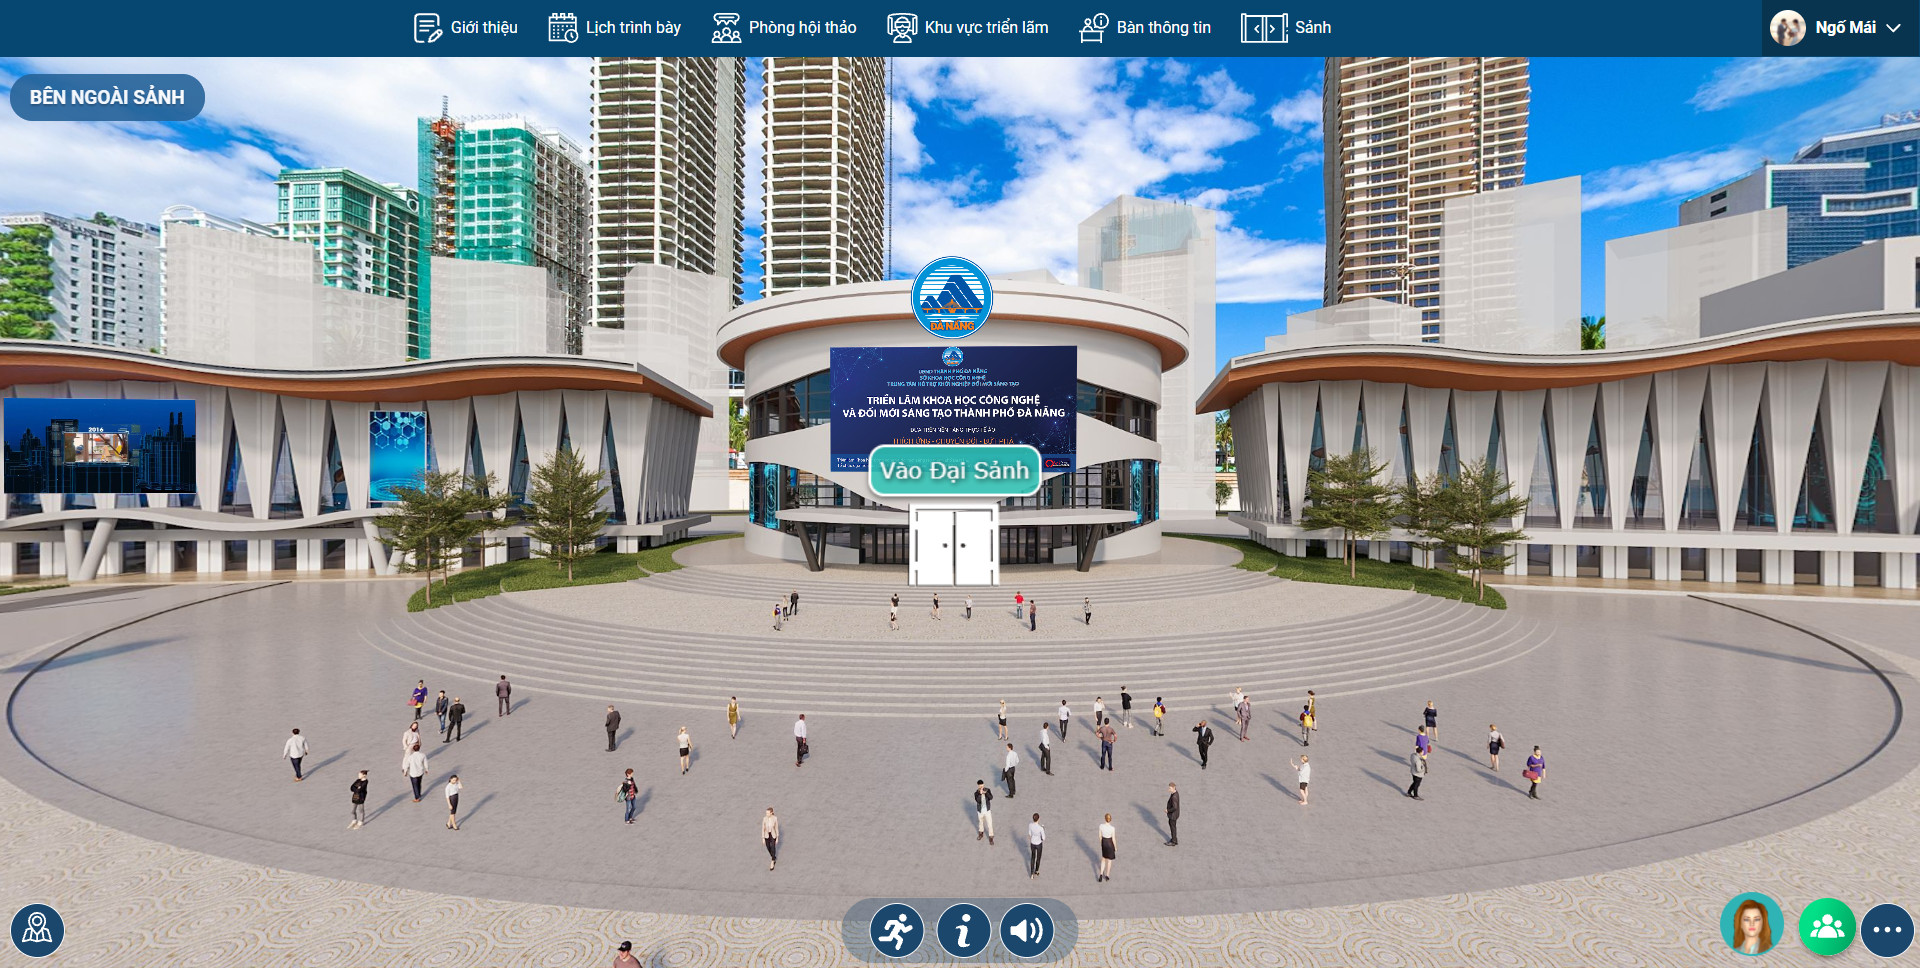 Đà Nẵng: Hội thảo ứng dụng triển lãm thực tế ảo giúp phát triển thị trường khoa học công nghệ - Ảnh 1.